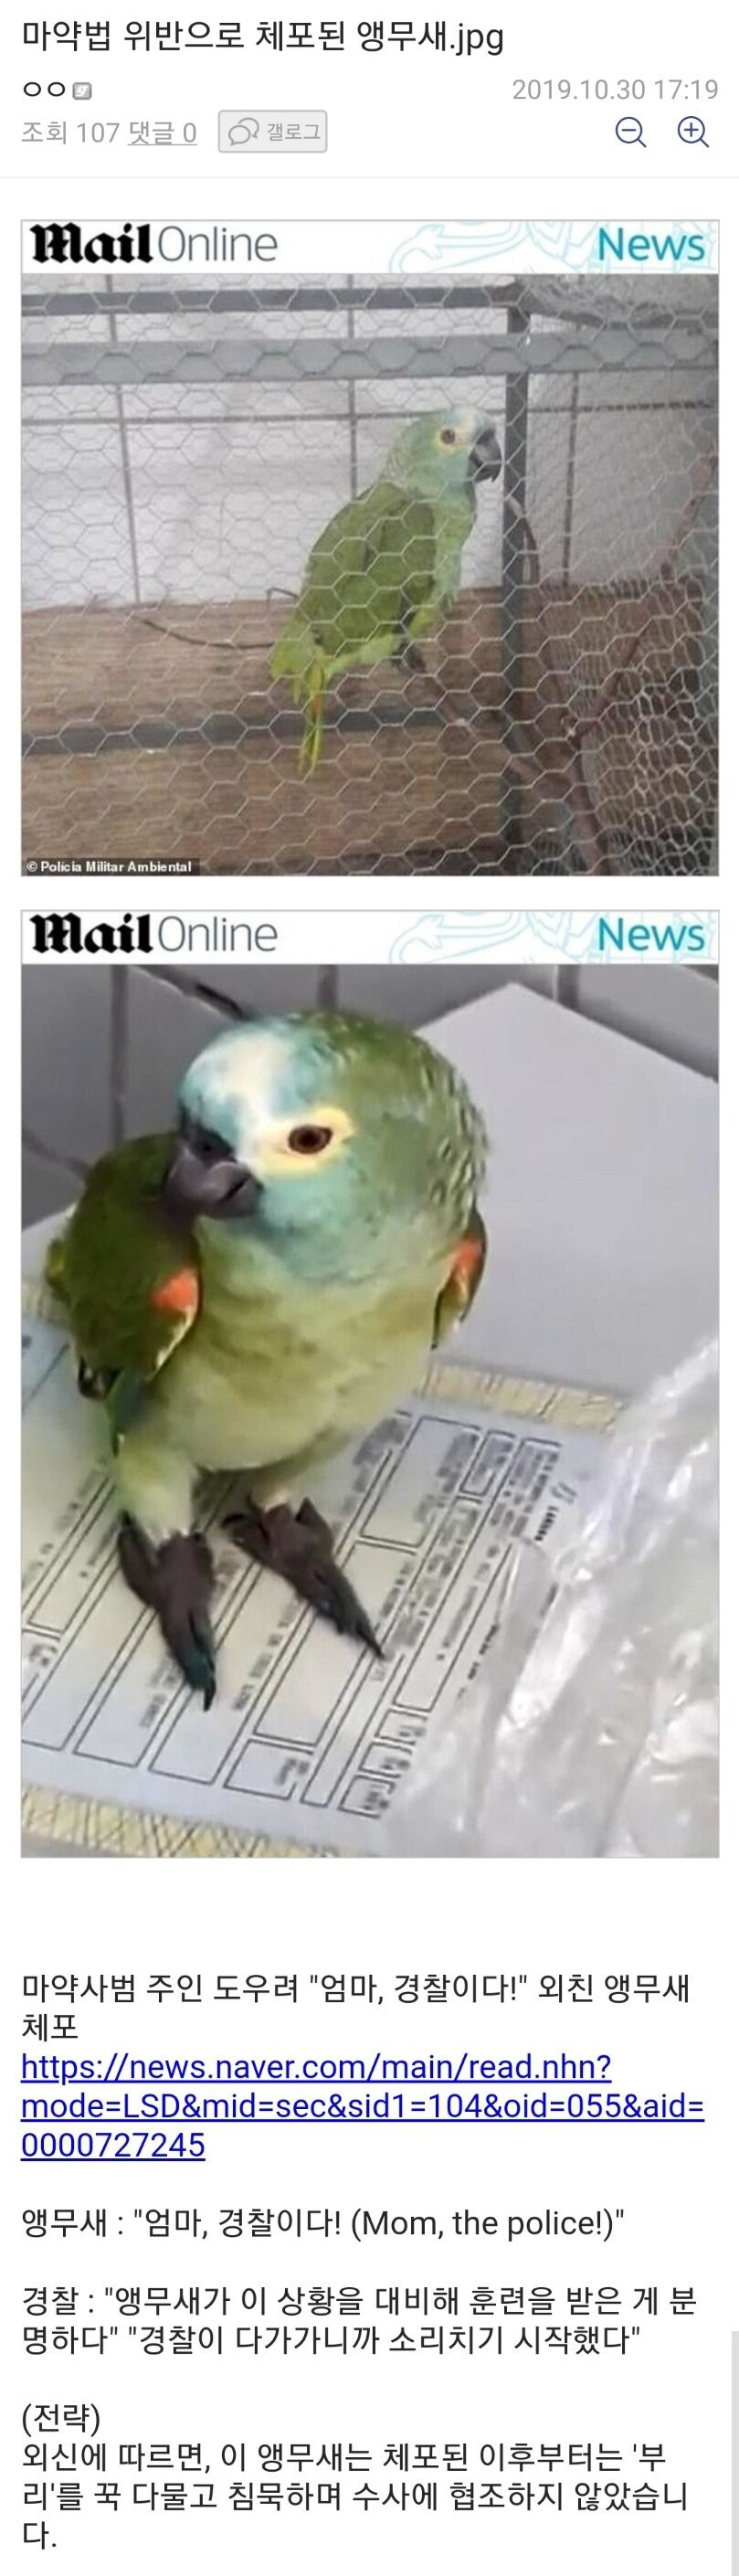 마약법 위반으로 체포된 앵무새